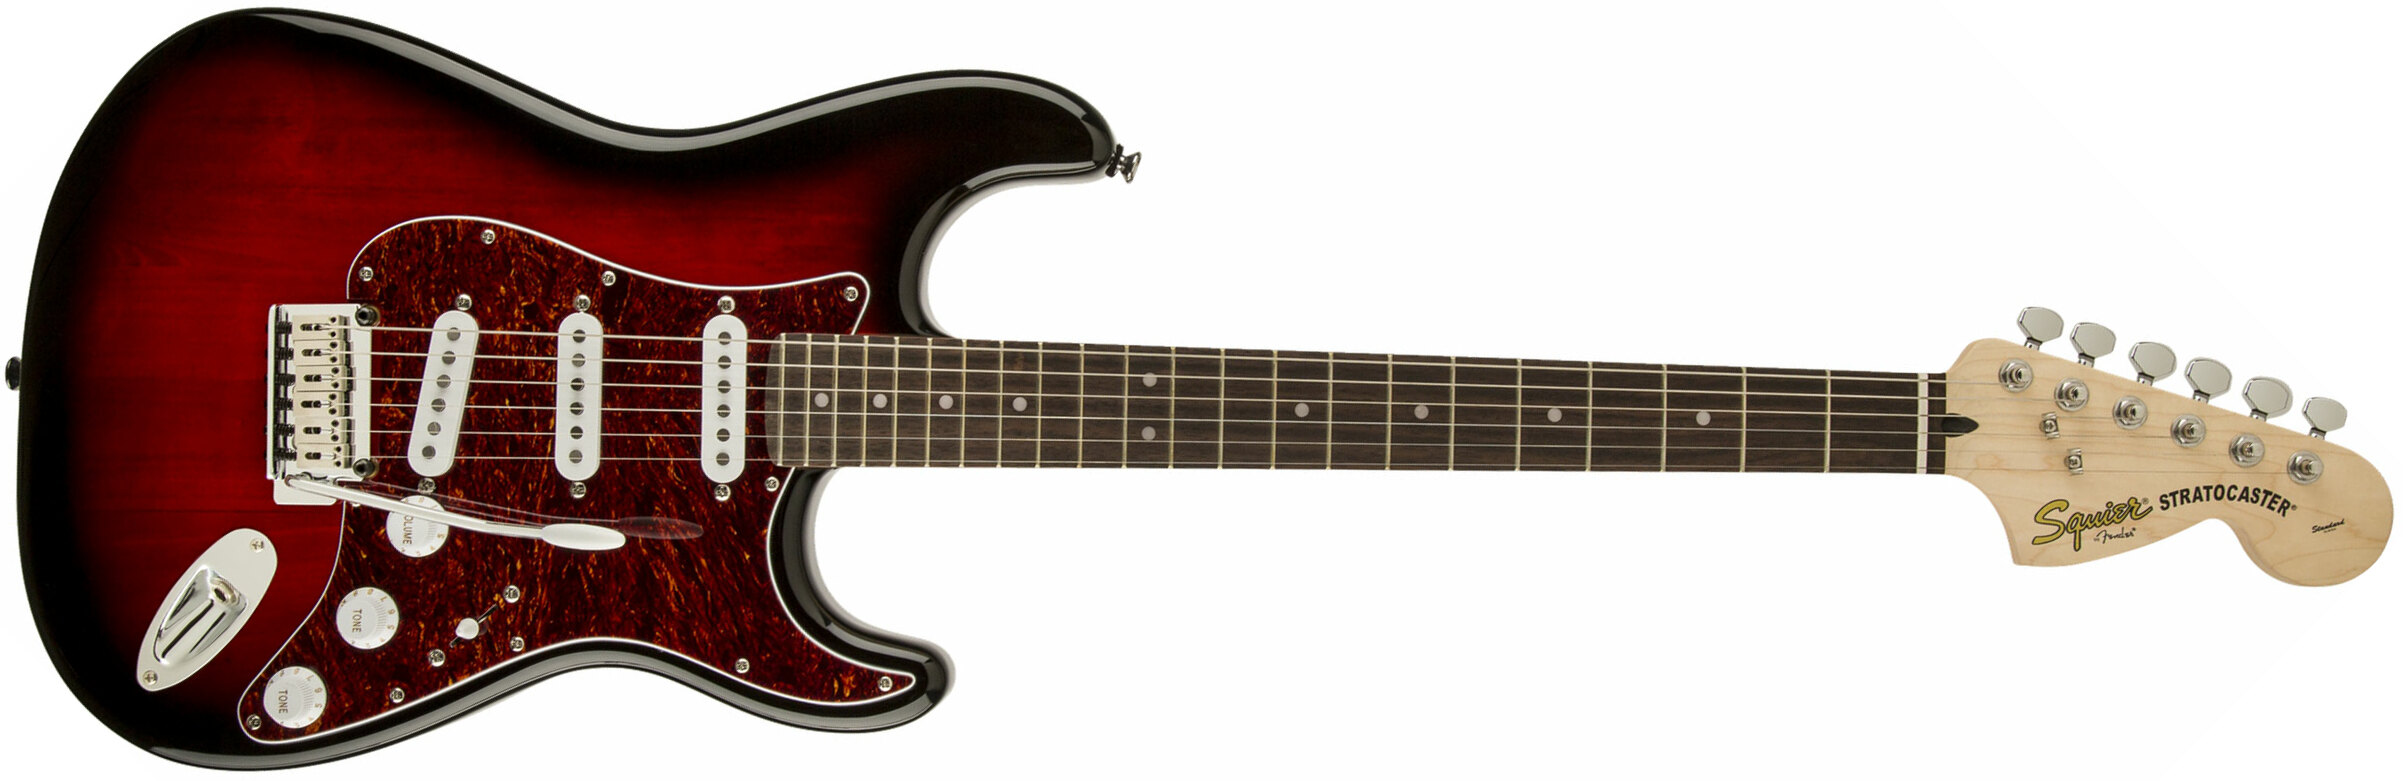 Squier Strat Standard Sss Lau - Antique Burst - Str shape electric guitar - Main picture